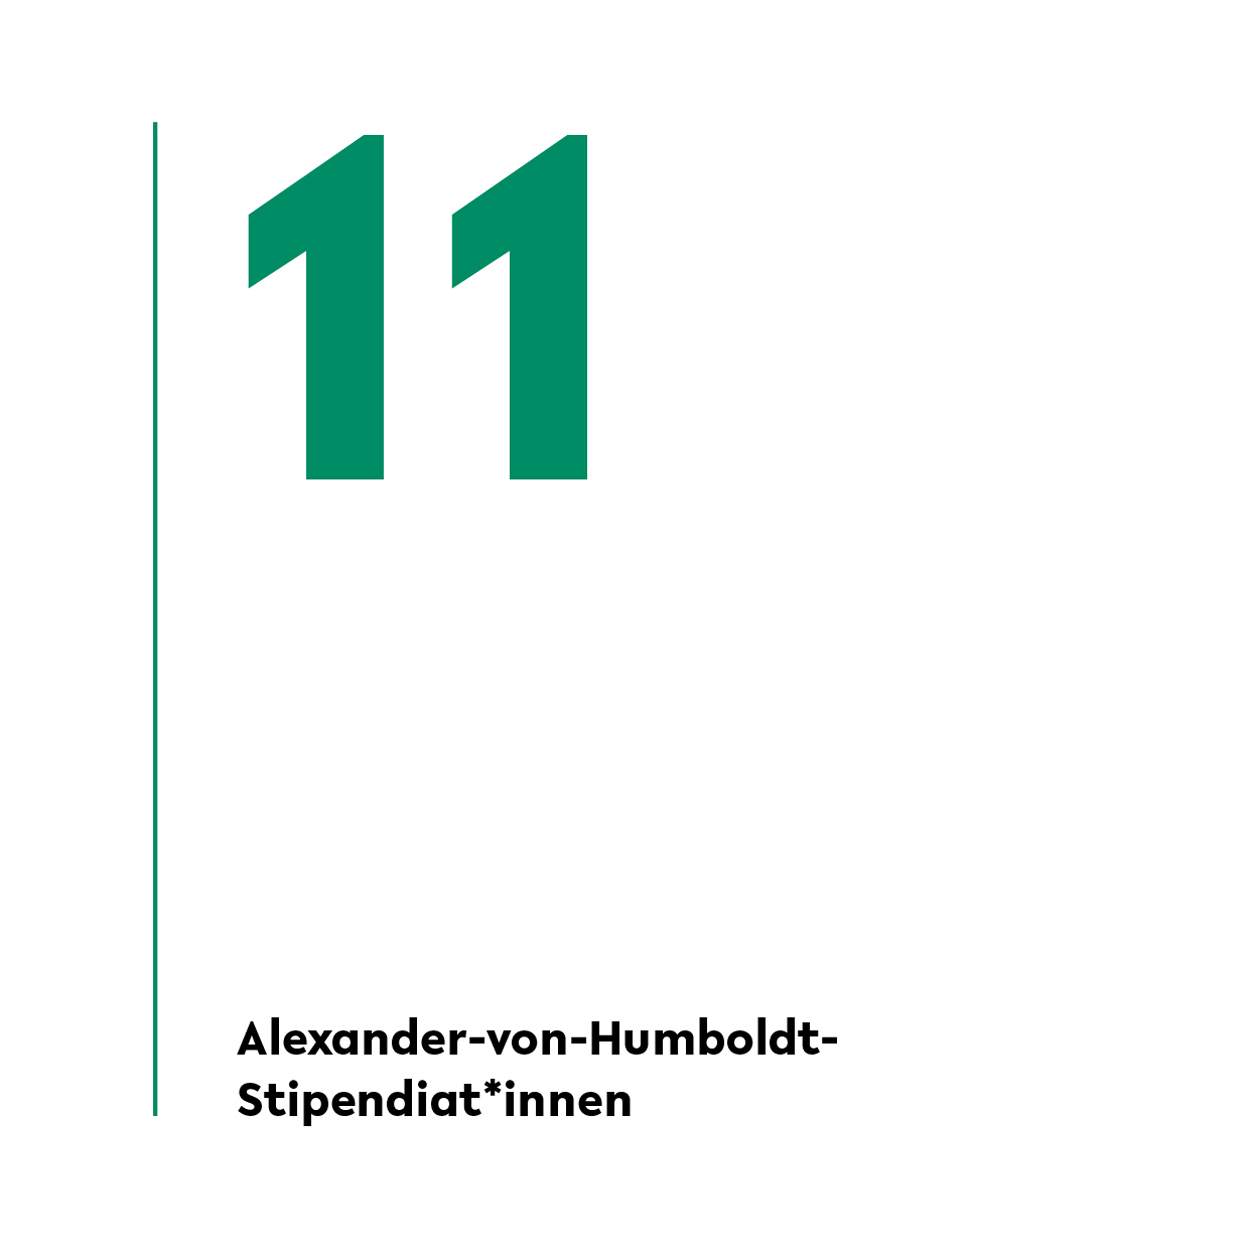 Von den internationalen Studierenden an der Universitt Bielefeld werden 16 mit Alexander-von-Humboldt-Stipendien gefrdert. 